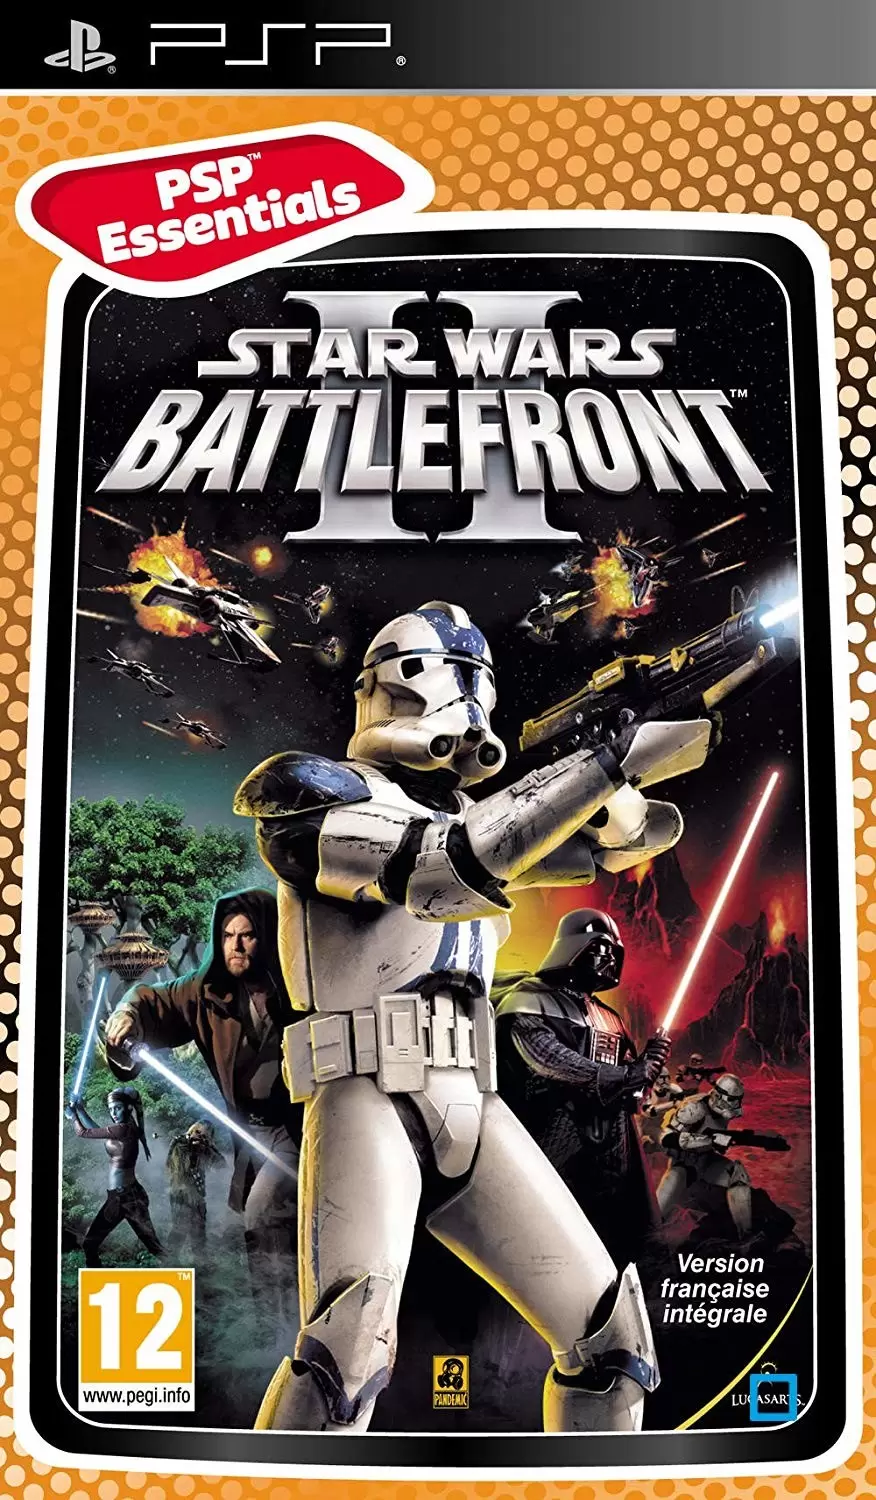 PSP Games - Star Wars : Battlefront 2 - essentials